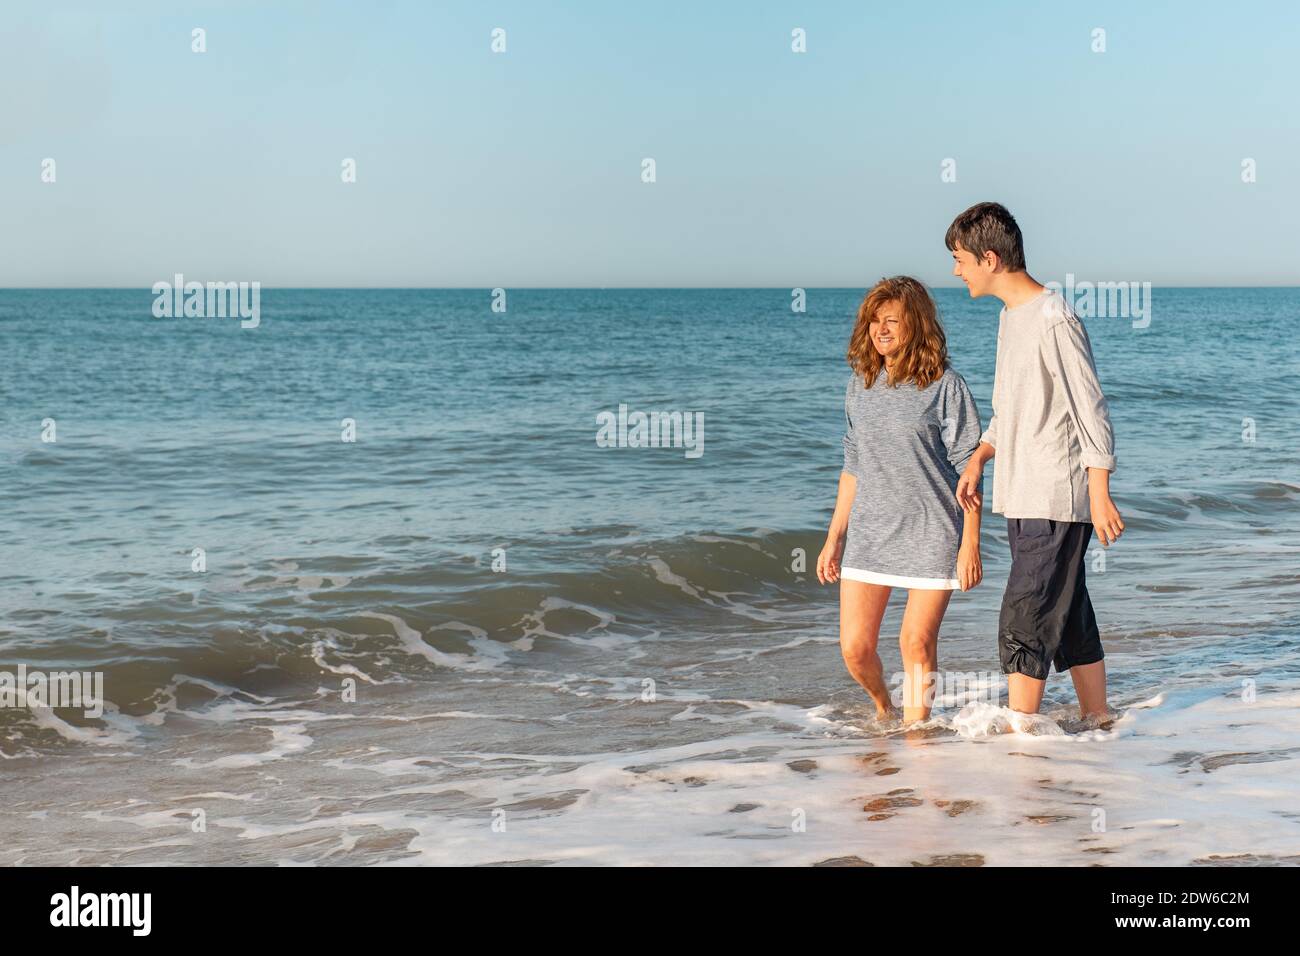 La mère et l'enfant s'amusent sur la plage Banque D'Images